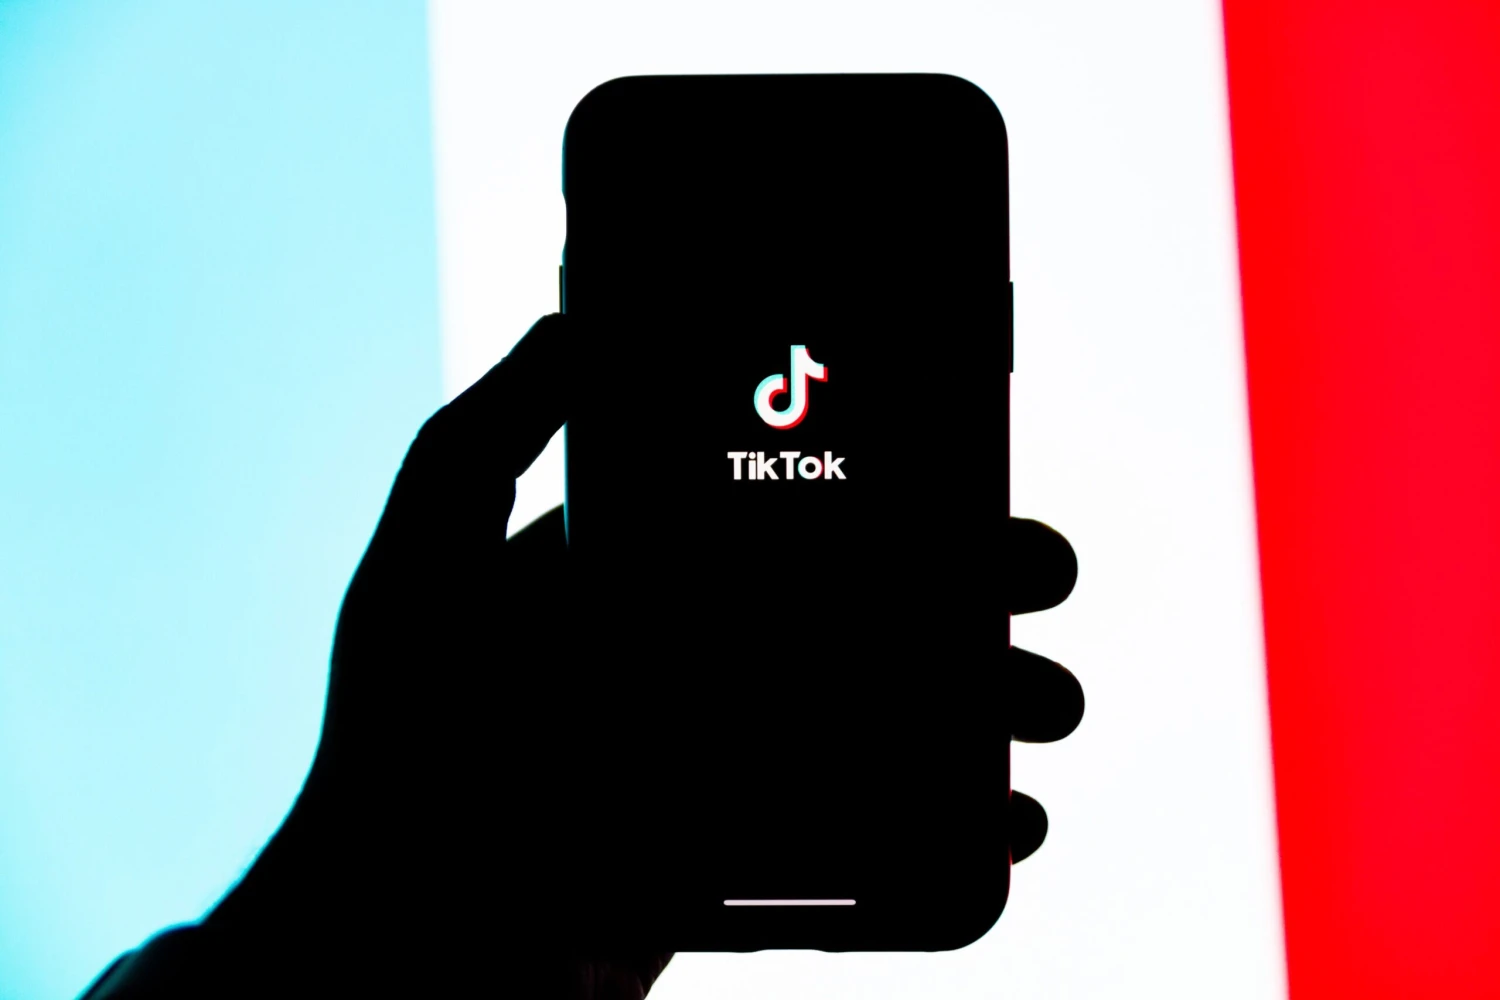 Návrat hudby světových hvězd na TikTok. Vydavatel UMG se sítí obnovil smlouvu